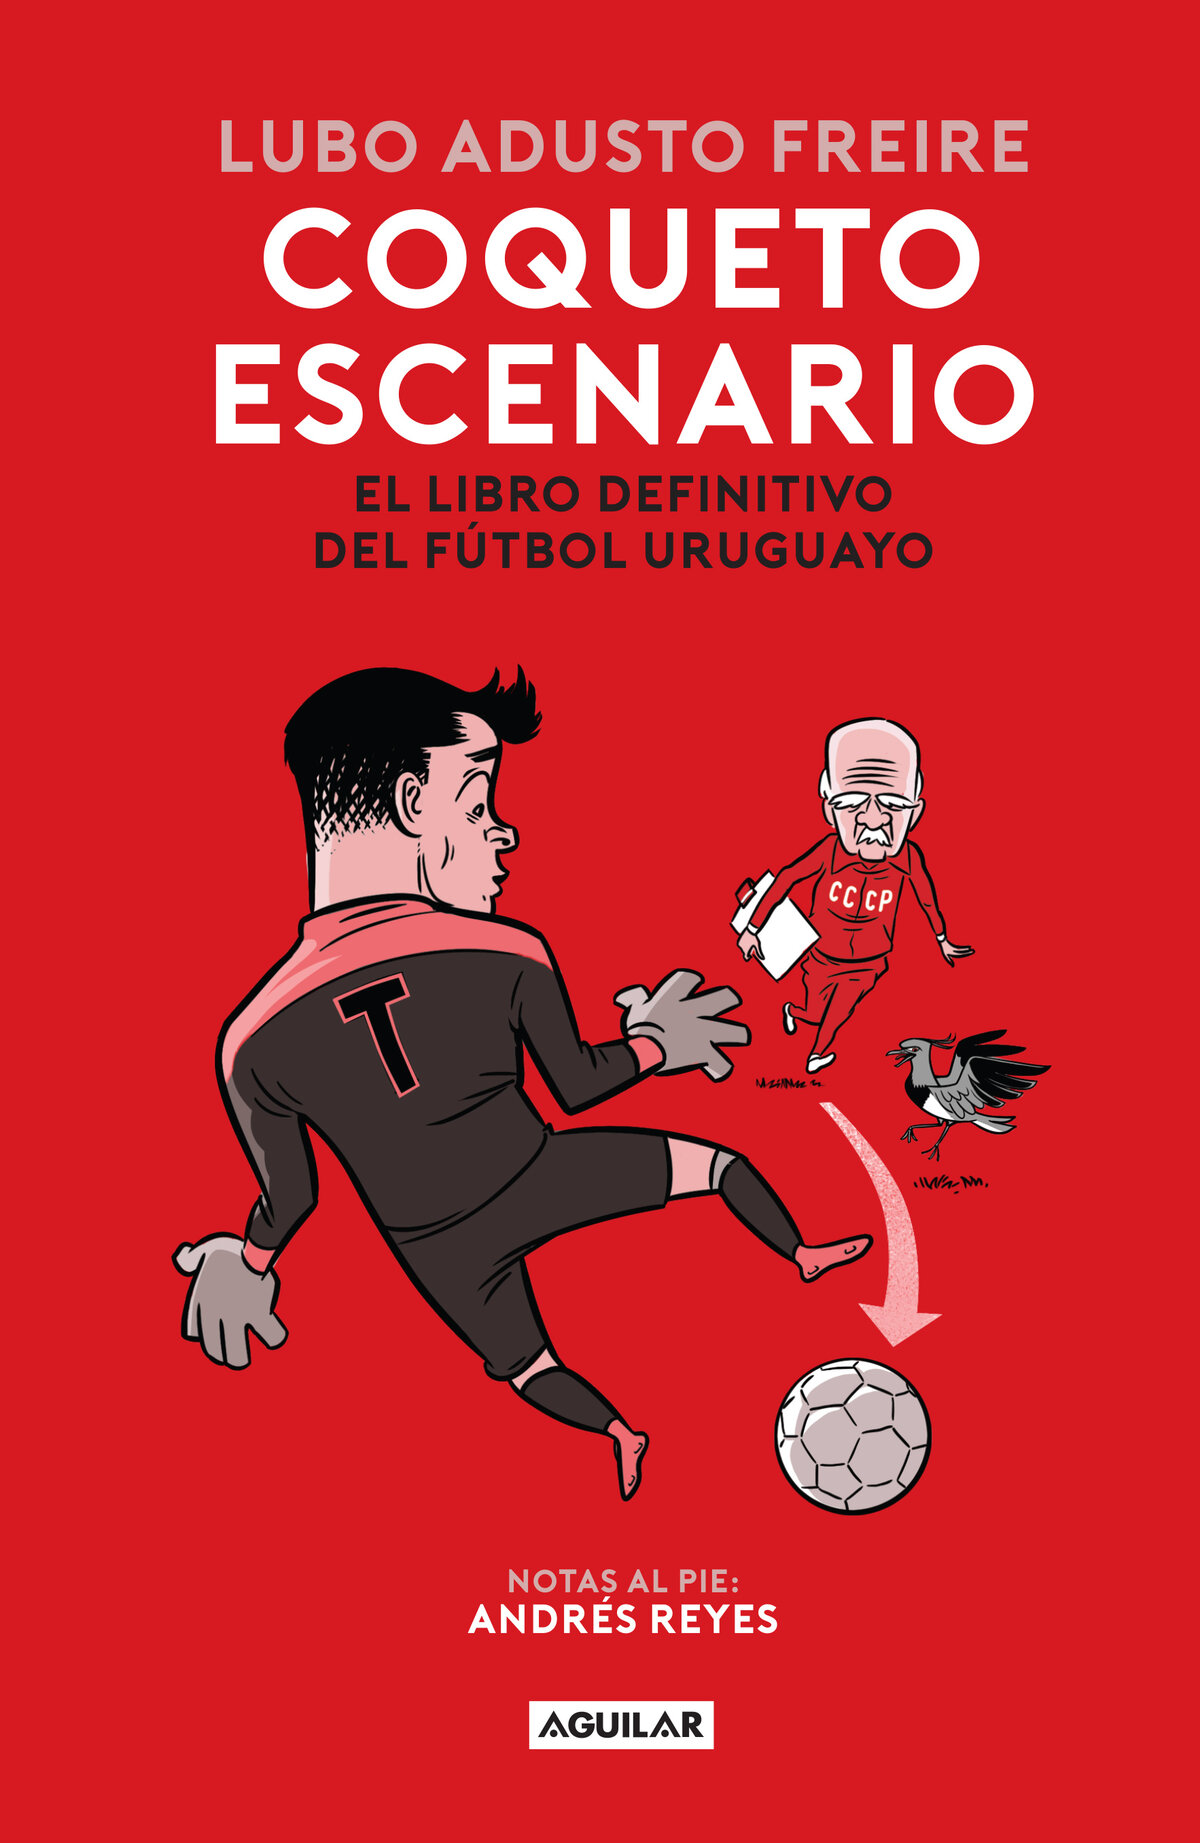 Coqueto escenario El libro definitivo del fútbol uruguayo - image 1